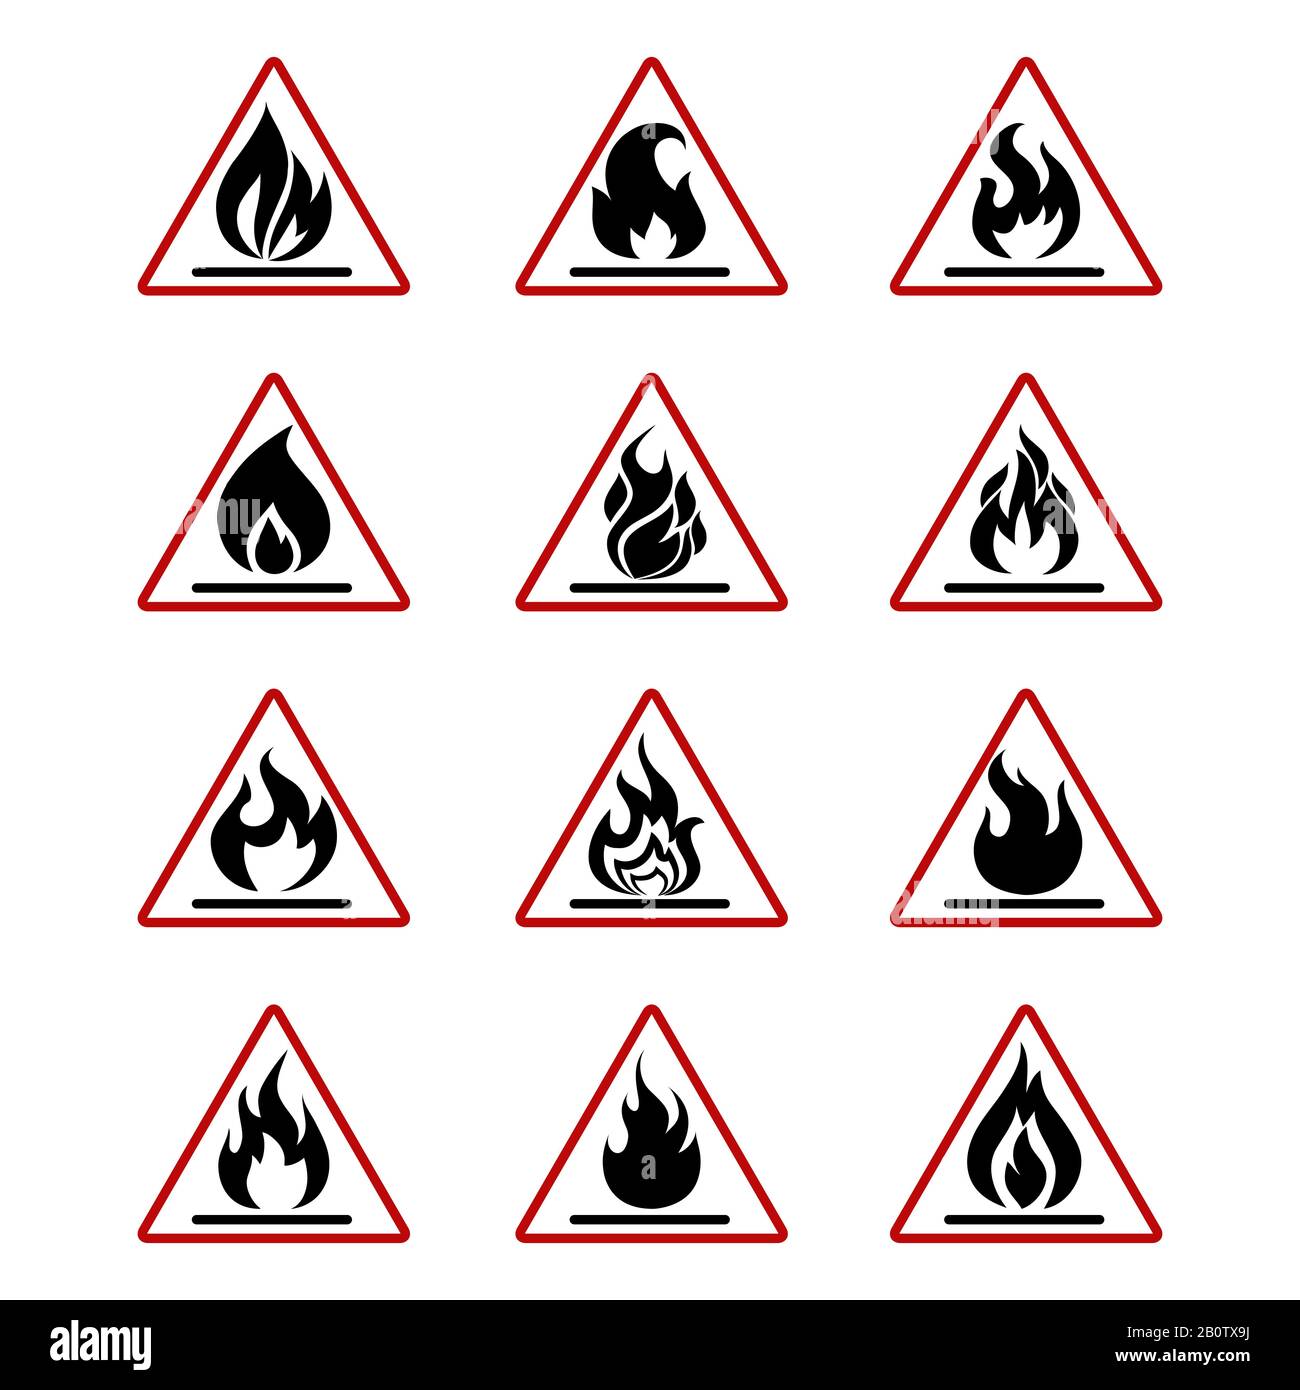 Gefahrensymbole mit weiß isolierter Flamme. Abbildung des Gefahrensymbolsatzes Stock Vektor